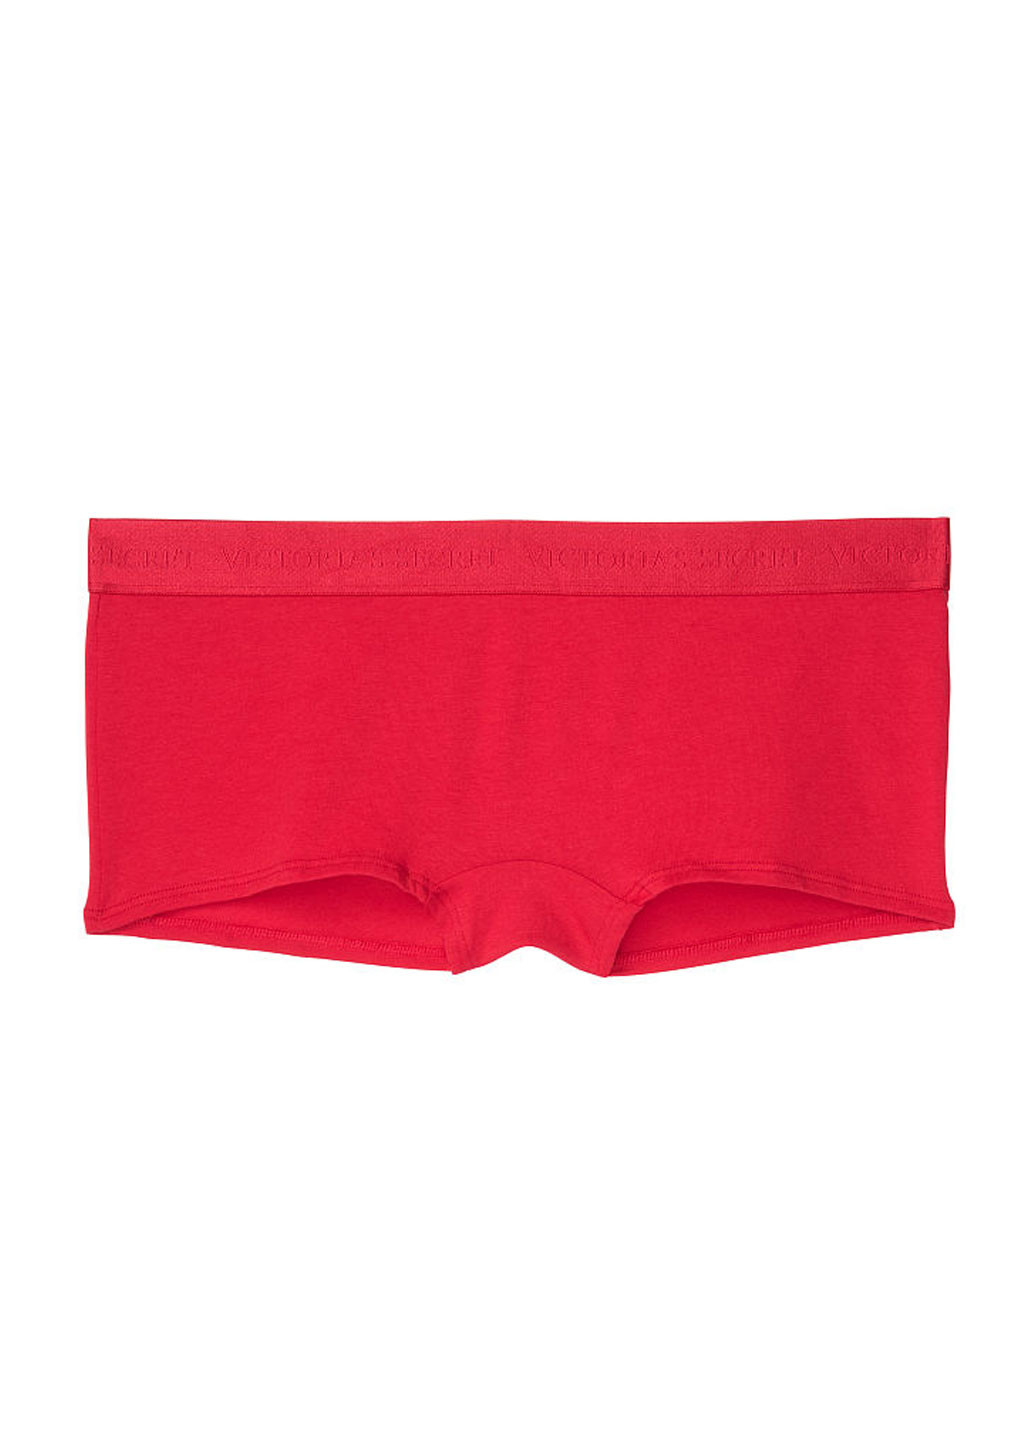 Трусики Victoria's Secret трусики-шорты однотонные красные повседневные трикотаж